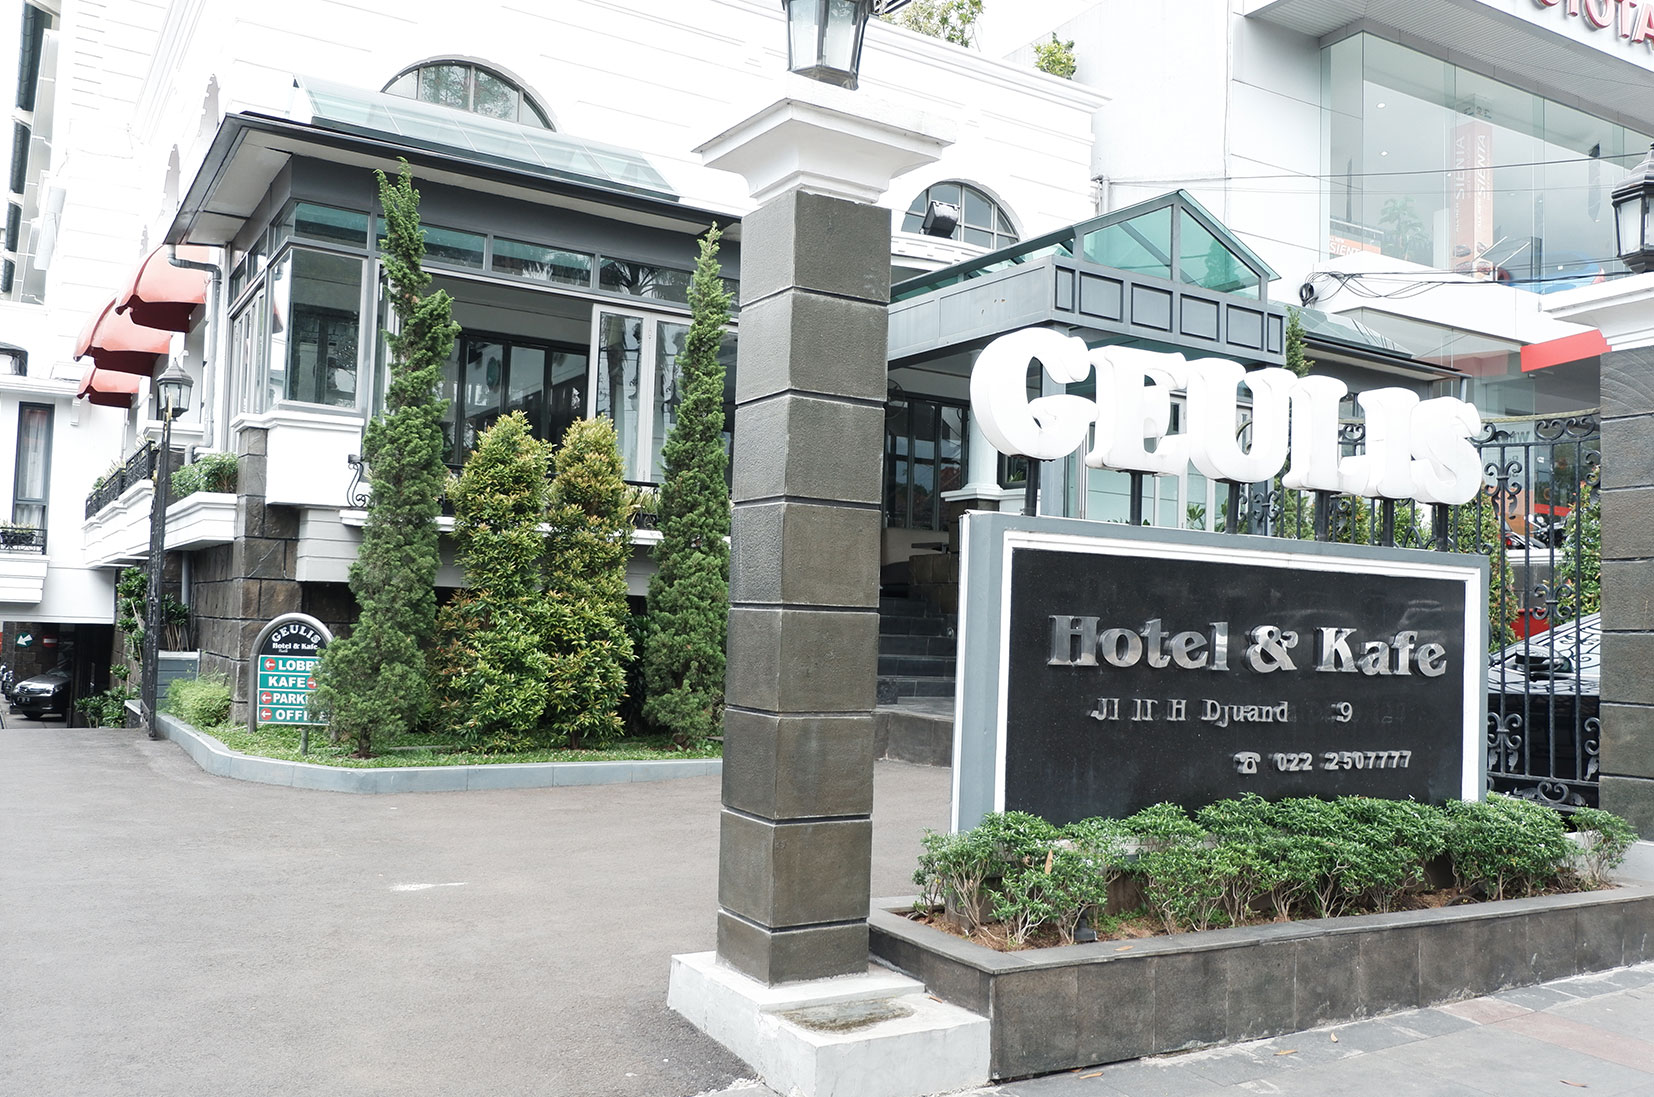 Geulis Boutique Hotel & Cafe, Tempat Berlibur dan Berbisnis di Kota Bandung/istimewa